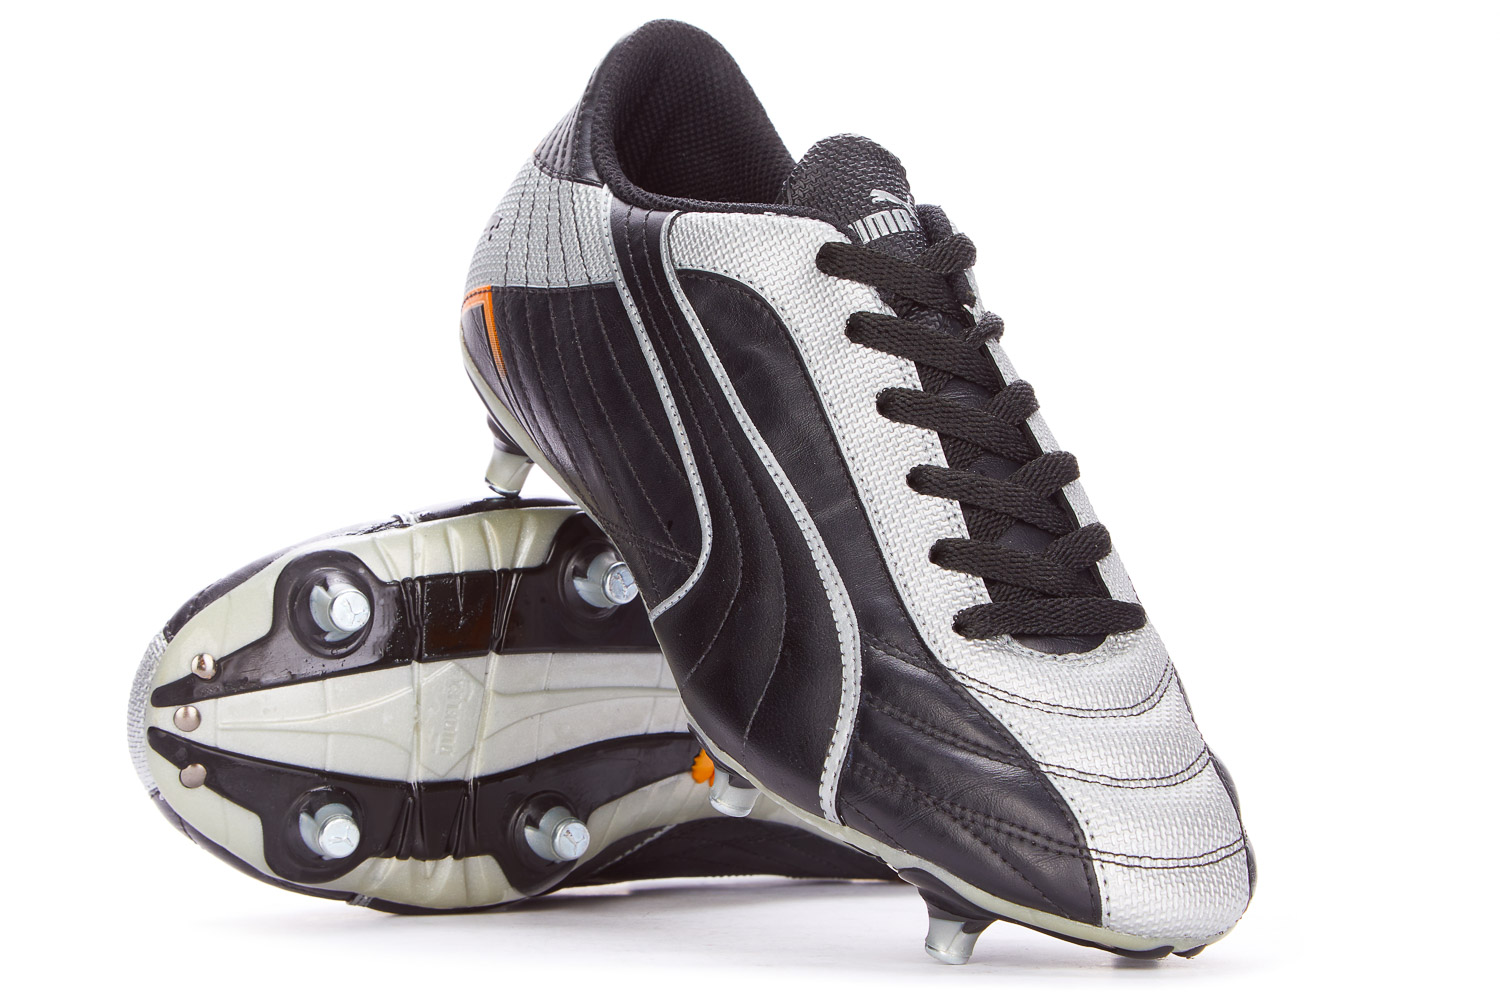 2002 Puma Torceira Football Boots *In Box* SG